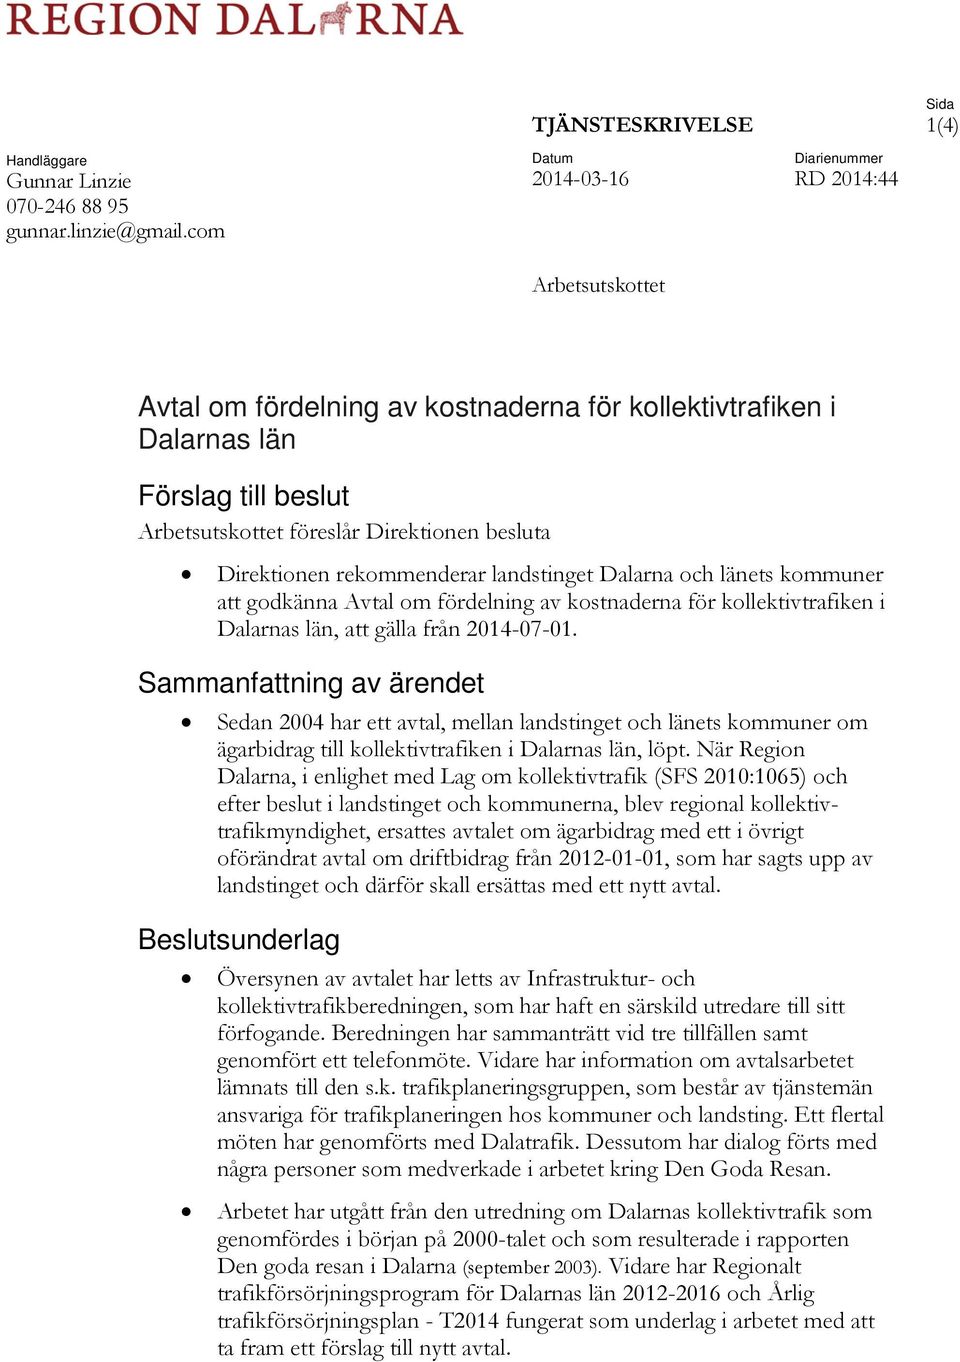 Direktionen rekommenderar landstinget Dalarna och länets kommuner att godkänna Avtal om fördelning av kostnaderna för kollektivtrafiken i Dalarnas län, att gälla från 2014-07-01.